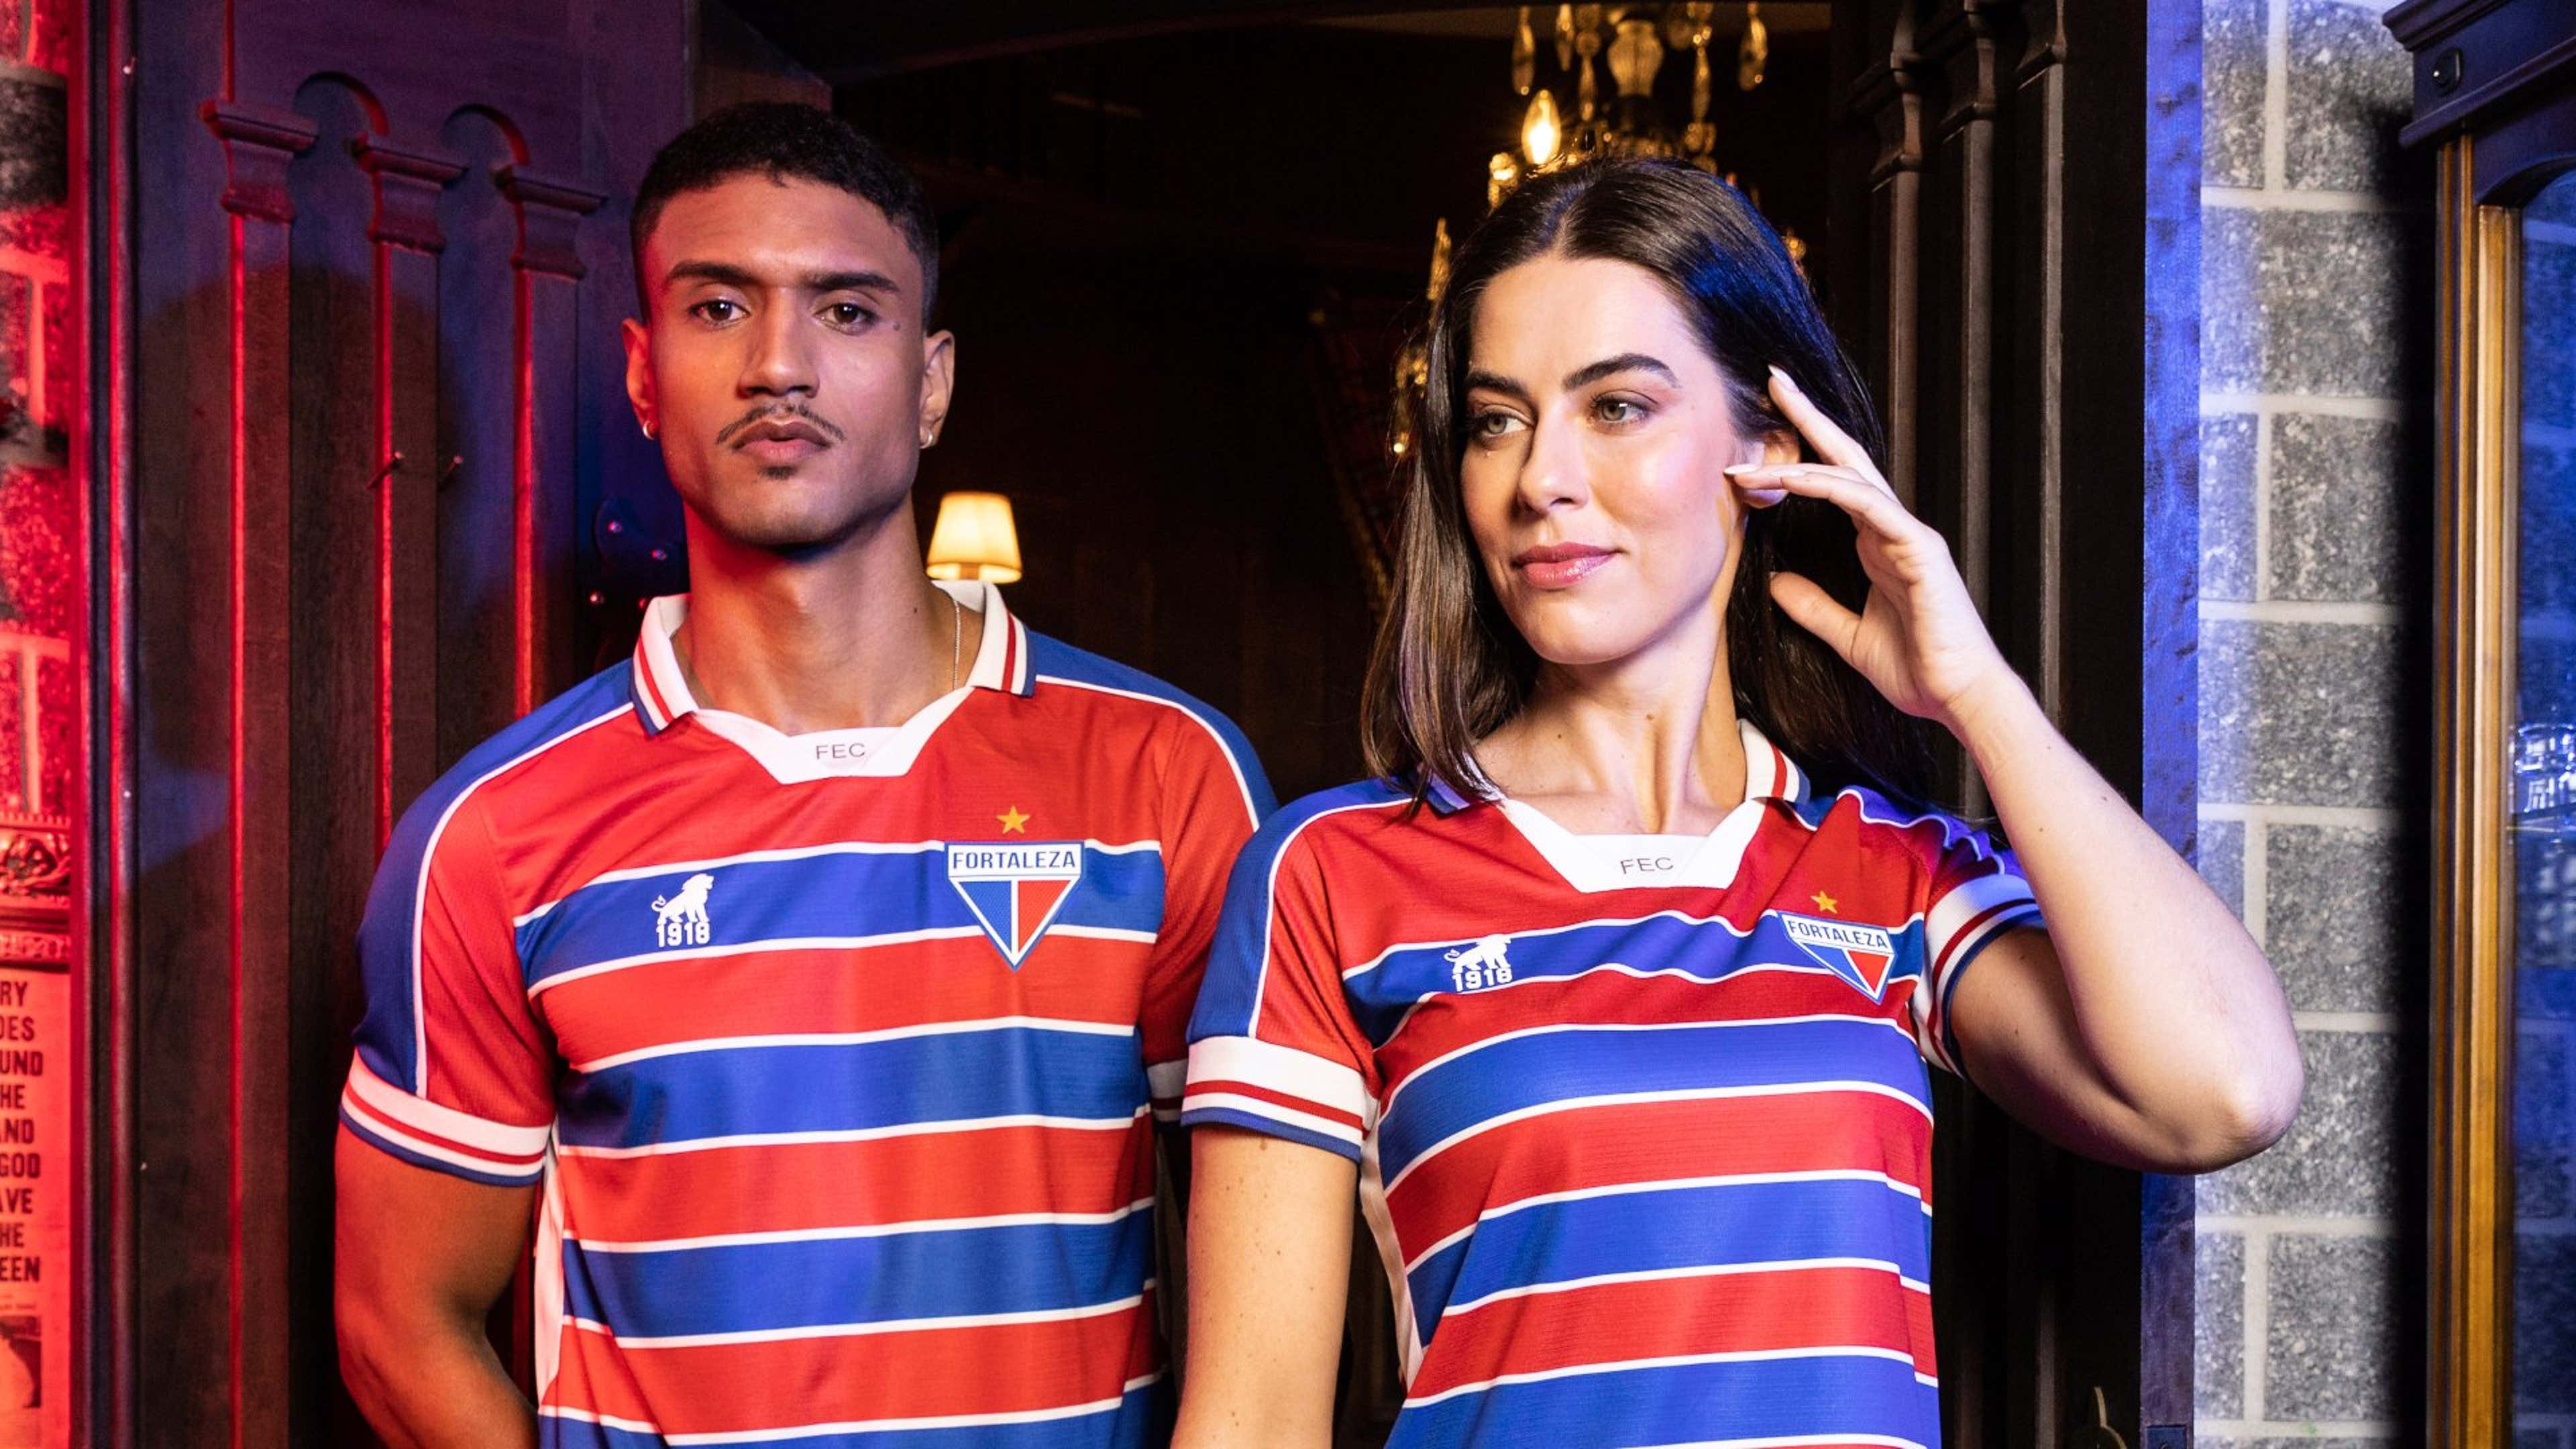 Independiente, o 'Rey de Copas', apresenta suas novas camisas 1 e 2